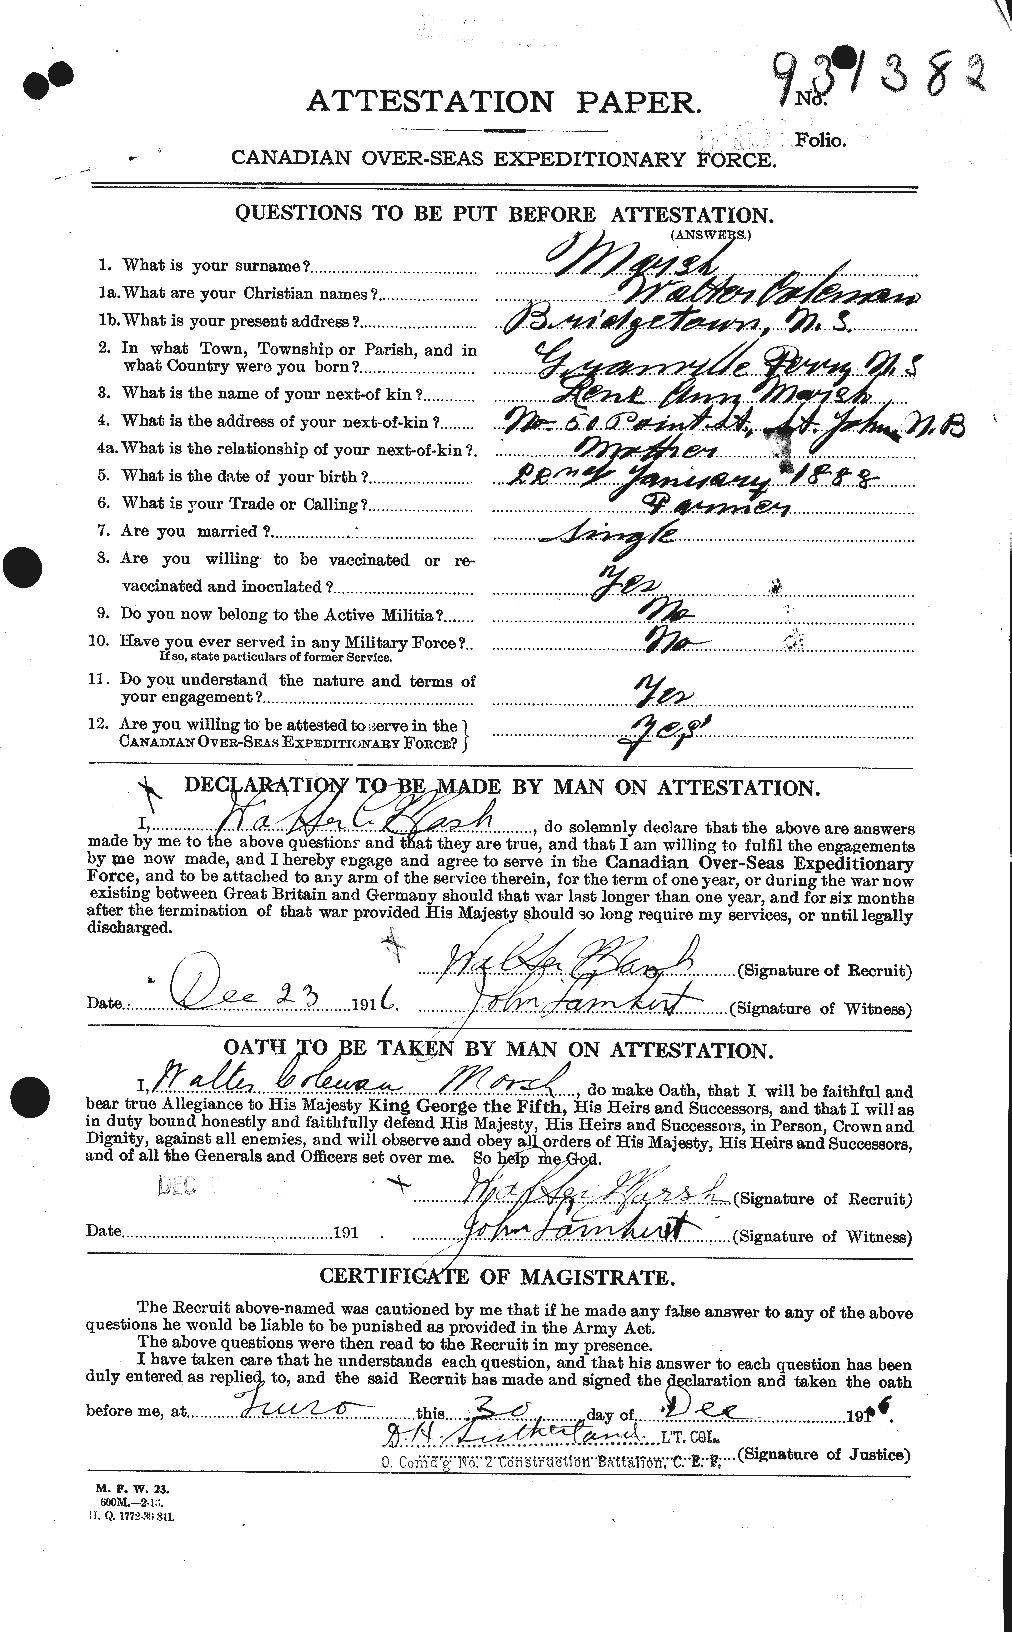 Dossiers du Personnel de la Première Guerre mondiale - CEC 495646a